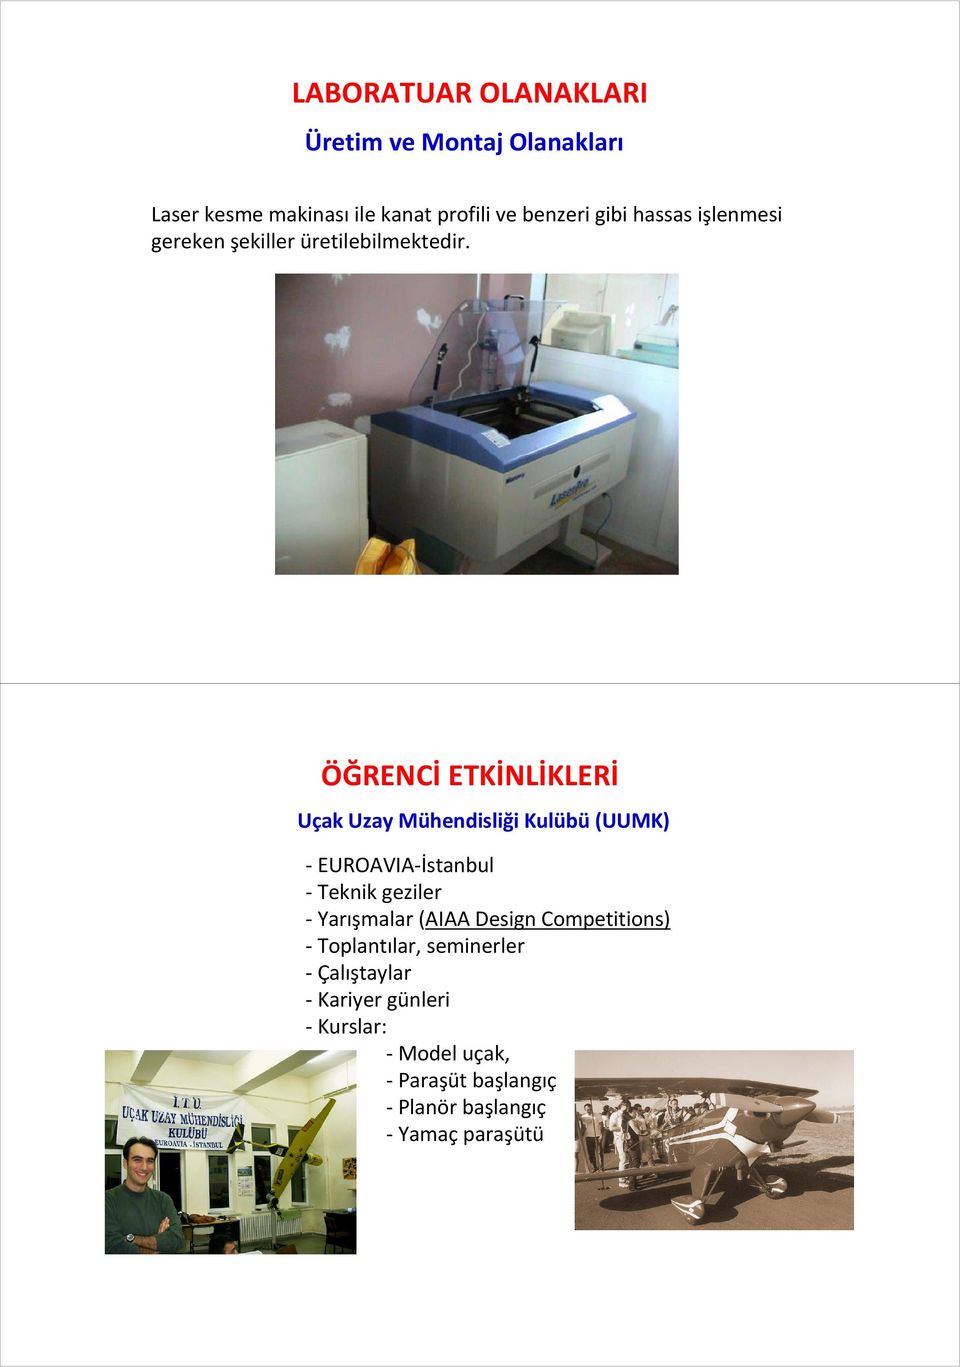 ÖĞRENCİ ETKİNLİKLERİ Uçak Uzay Mühendisliği Kulübü(UUMK) -EUROAVIA-İstanbul - Teknik geziler - Yarışmalar